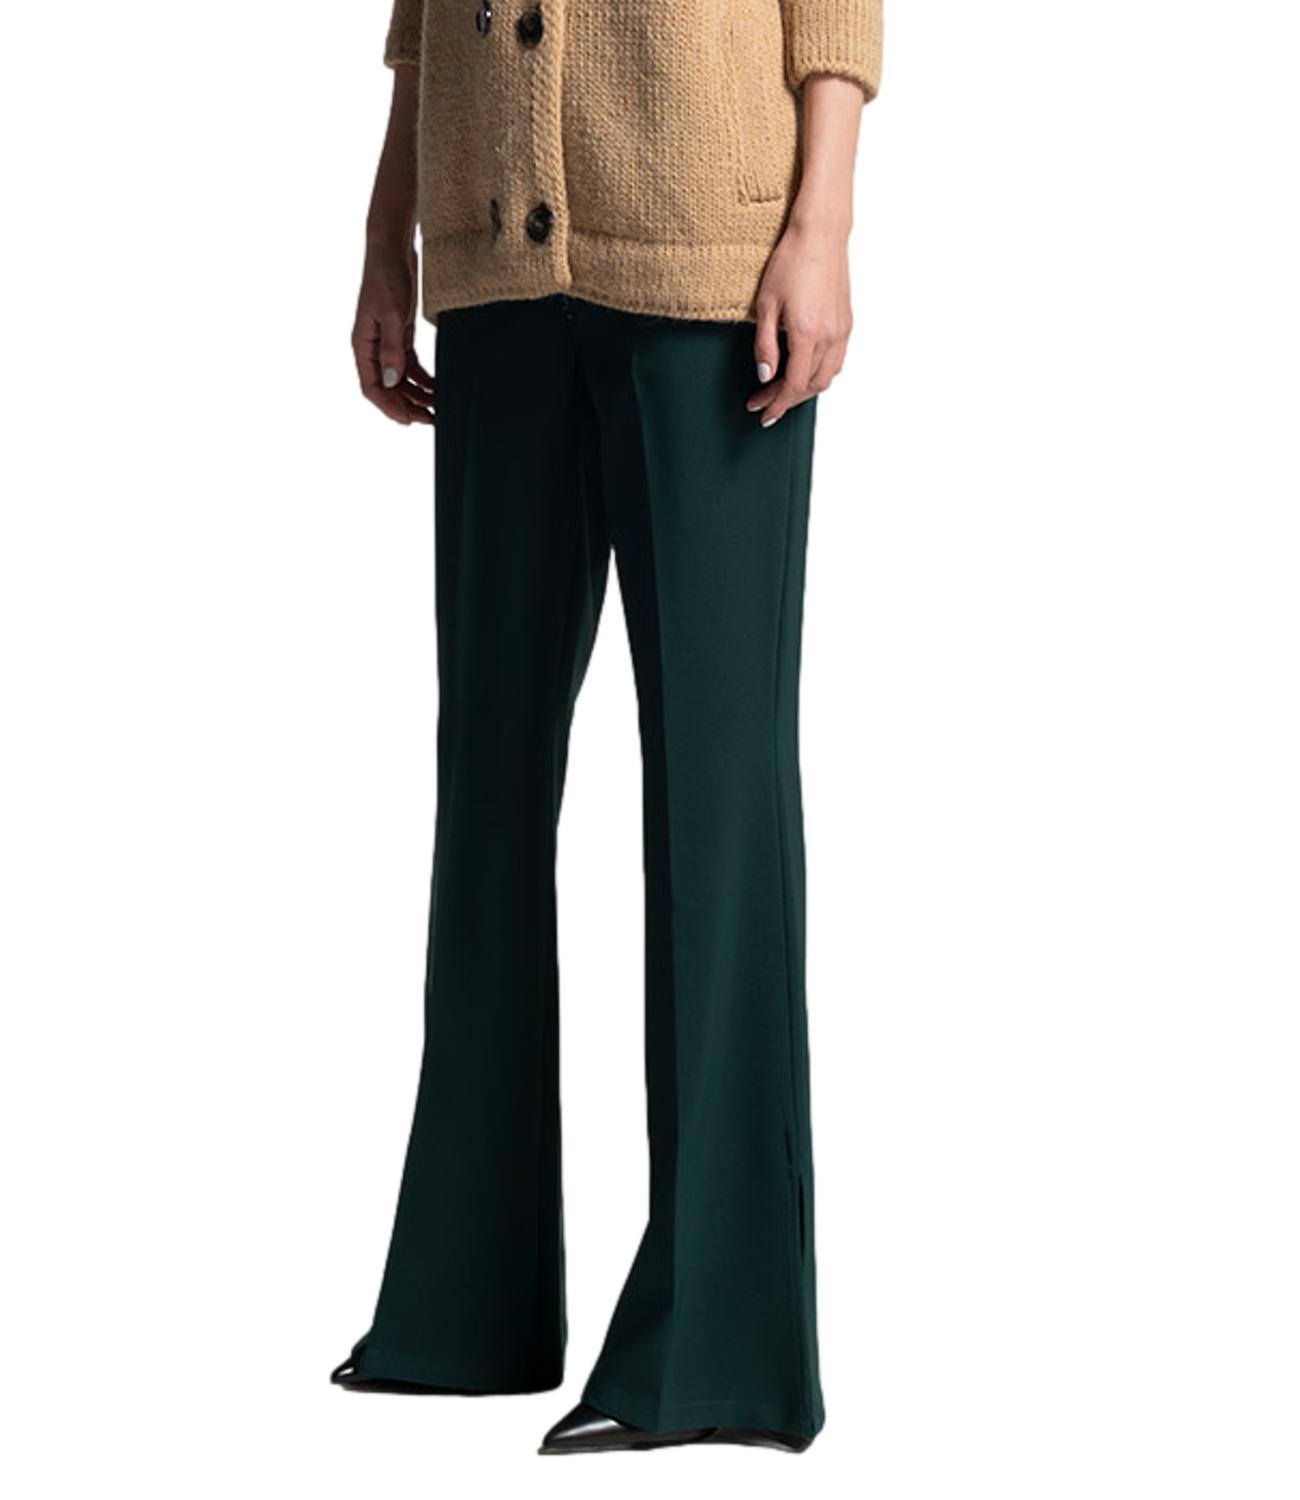 Women's green slit trousers